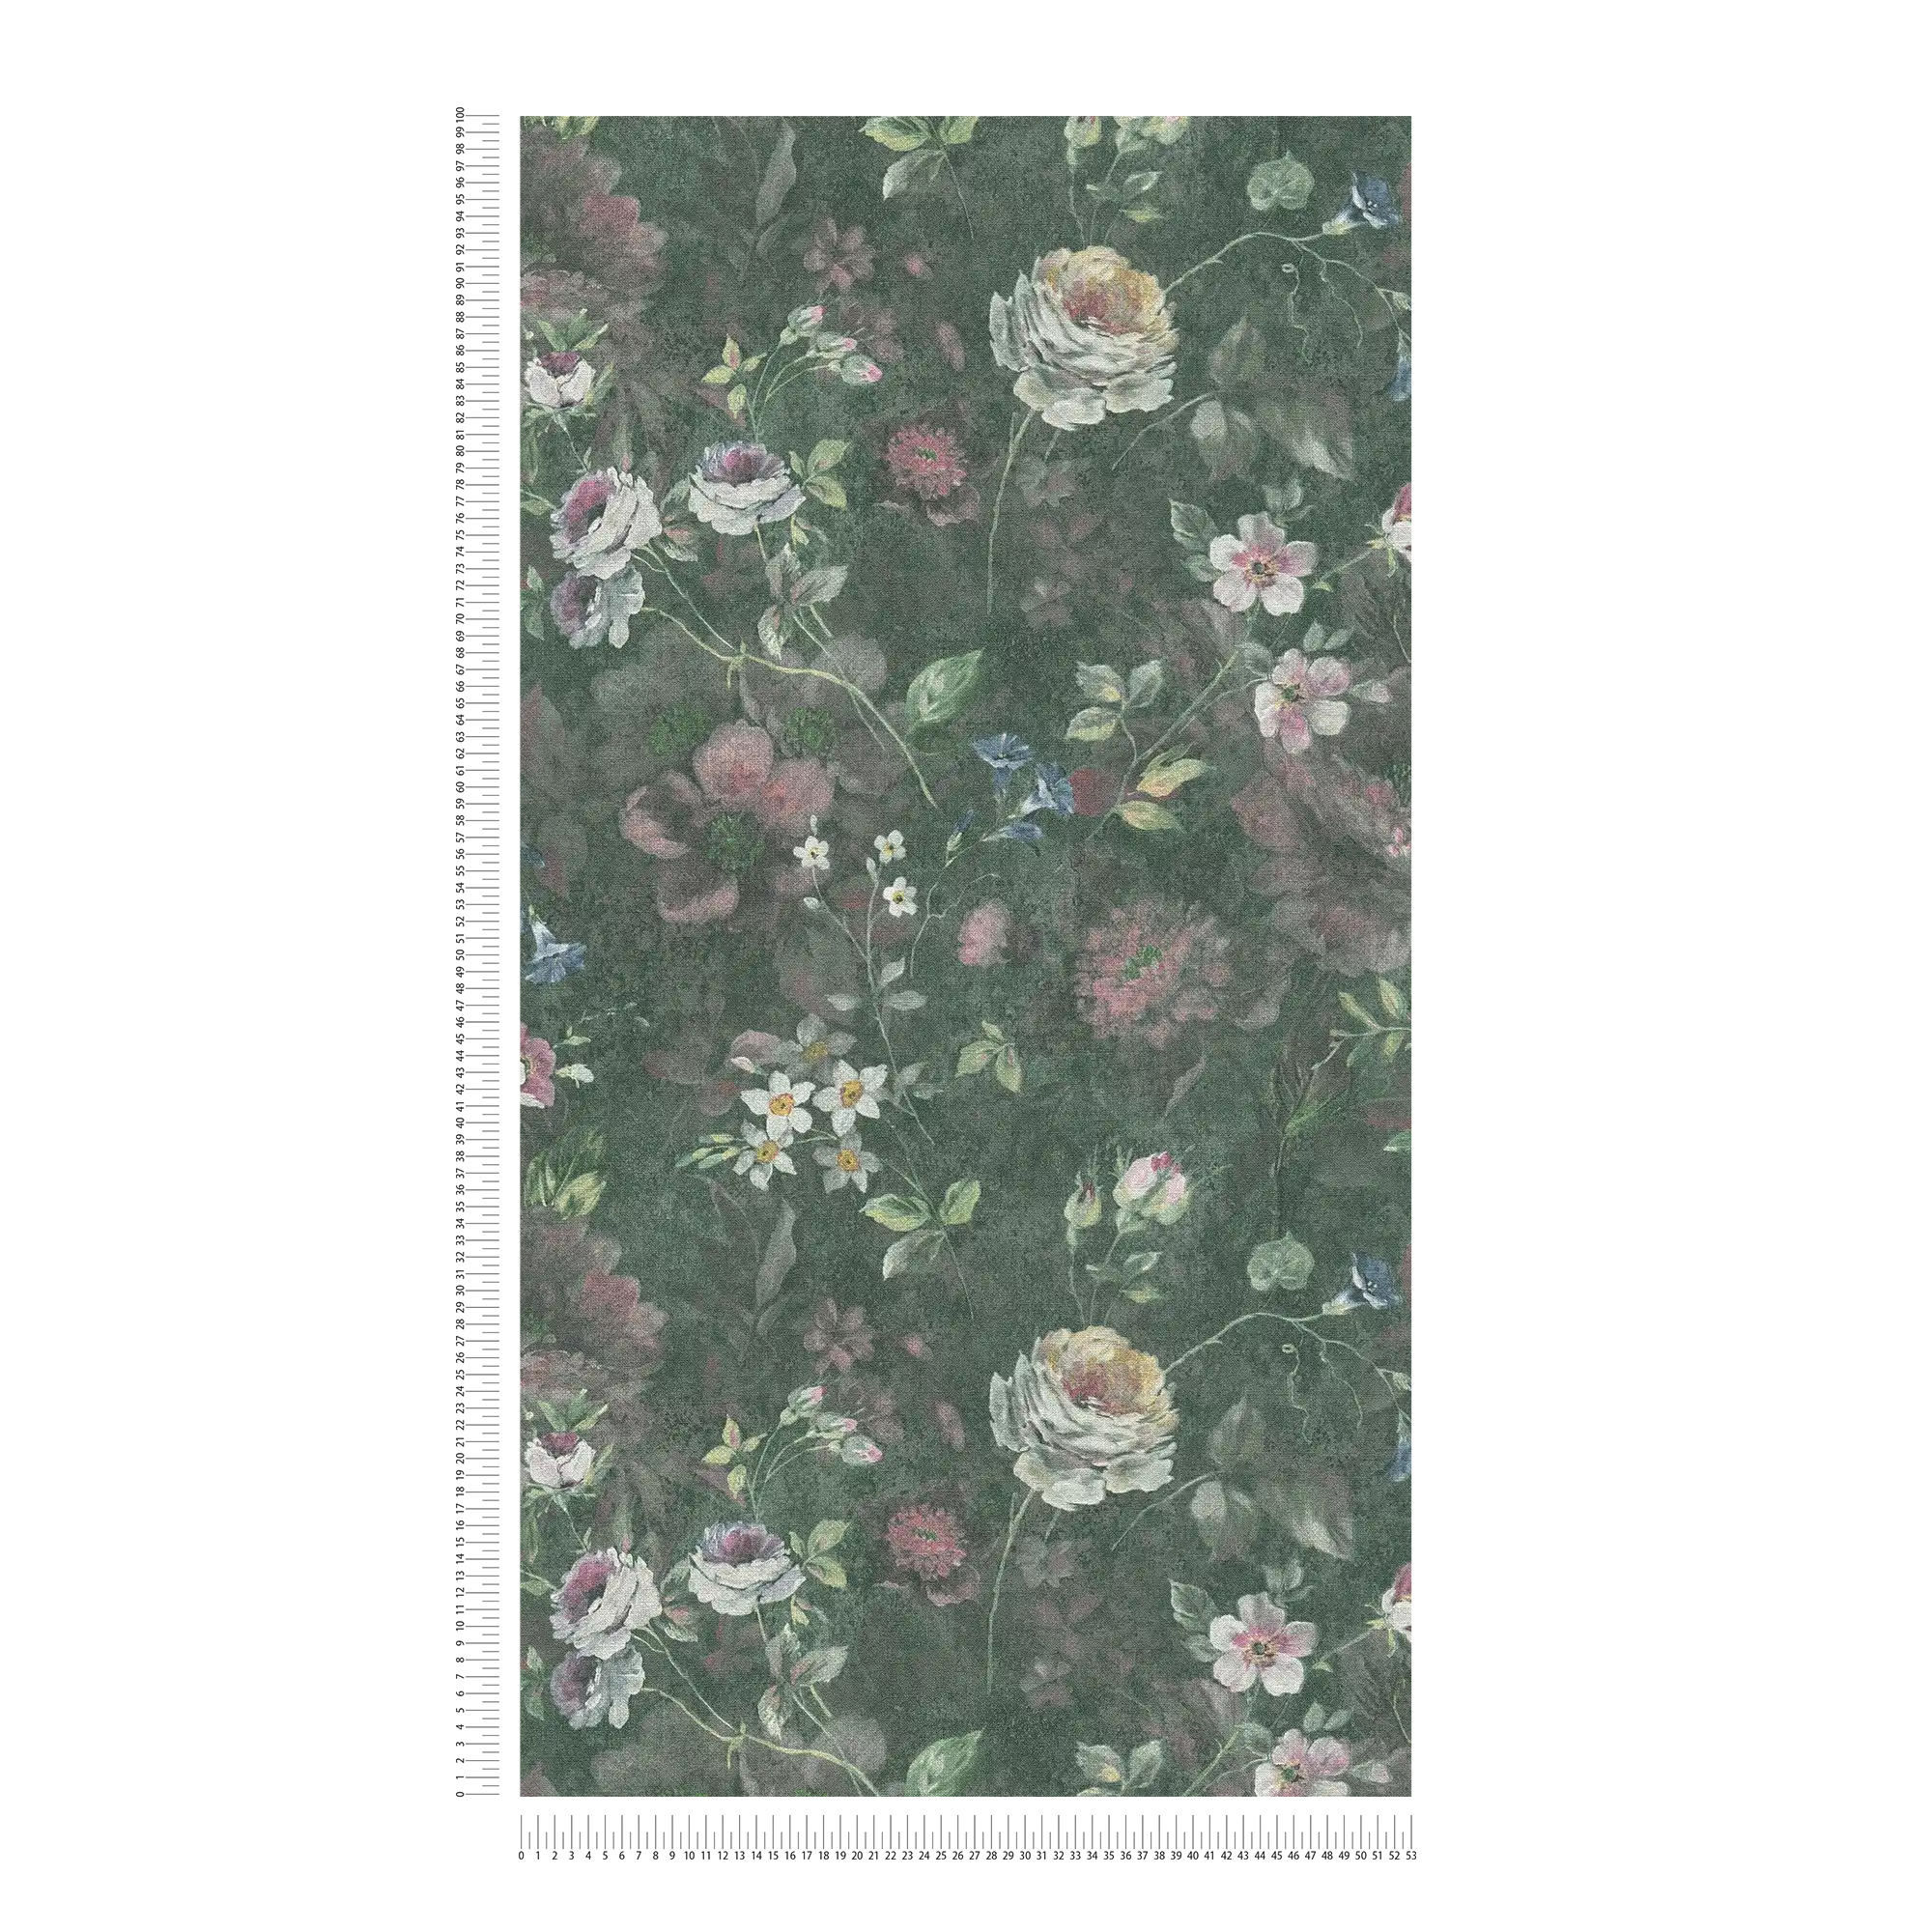             Papier peint intissé avec motif floral peint sans PVC - vert, blanc, rose
        